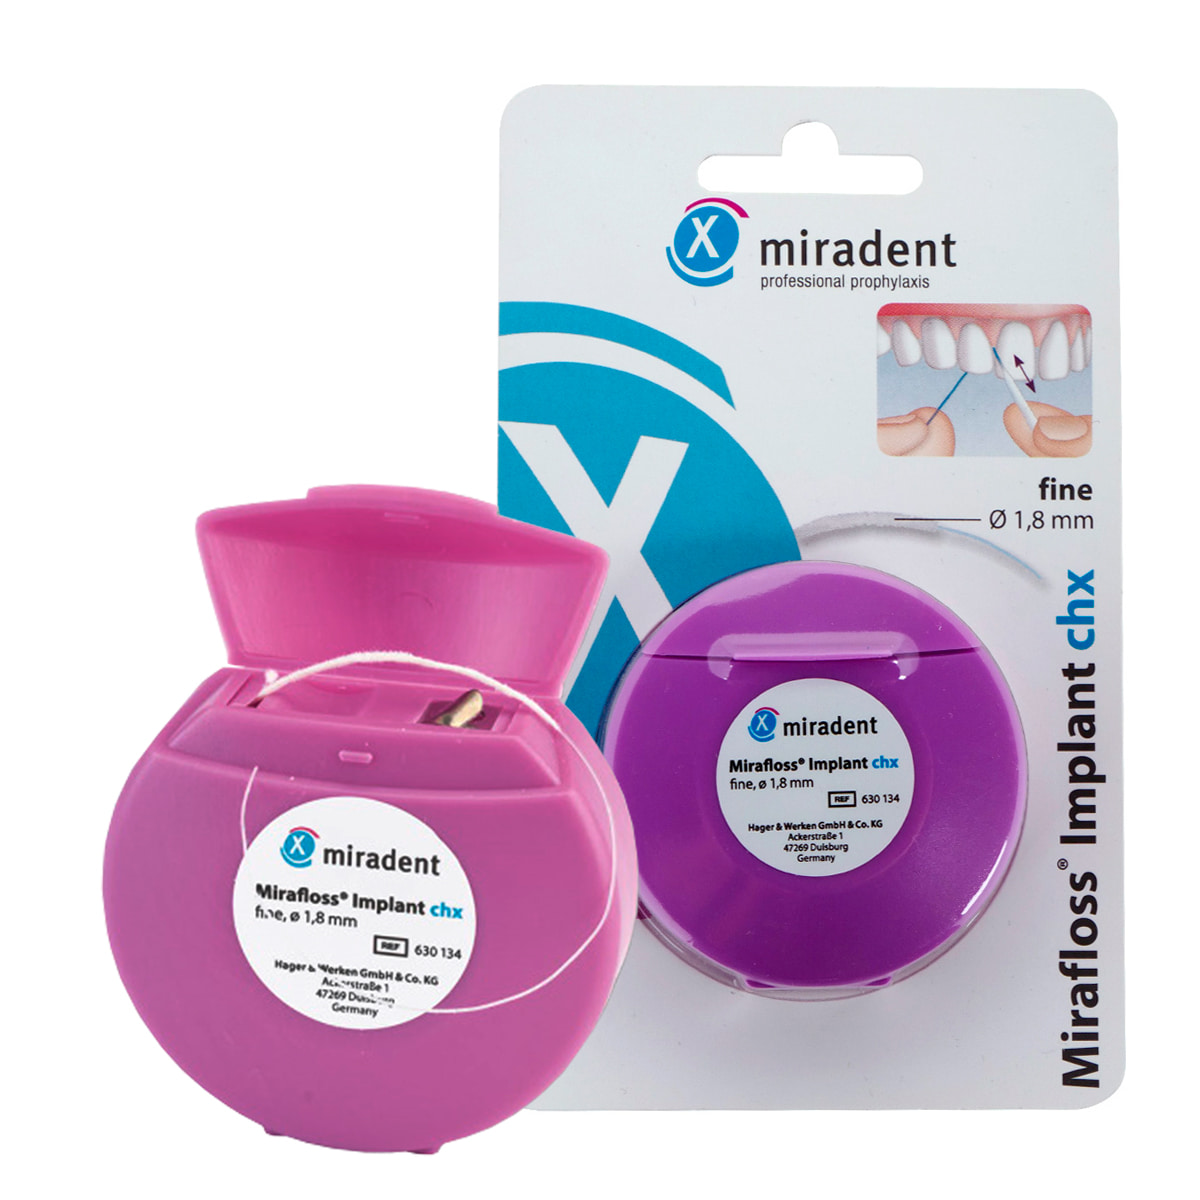 Зубная нить miradent Mirafloss Implant chx 1,8 мм для имплантов/брекетов зубная нить miradent mirafloss implant chx 1 8 мм для имплантов брекетов